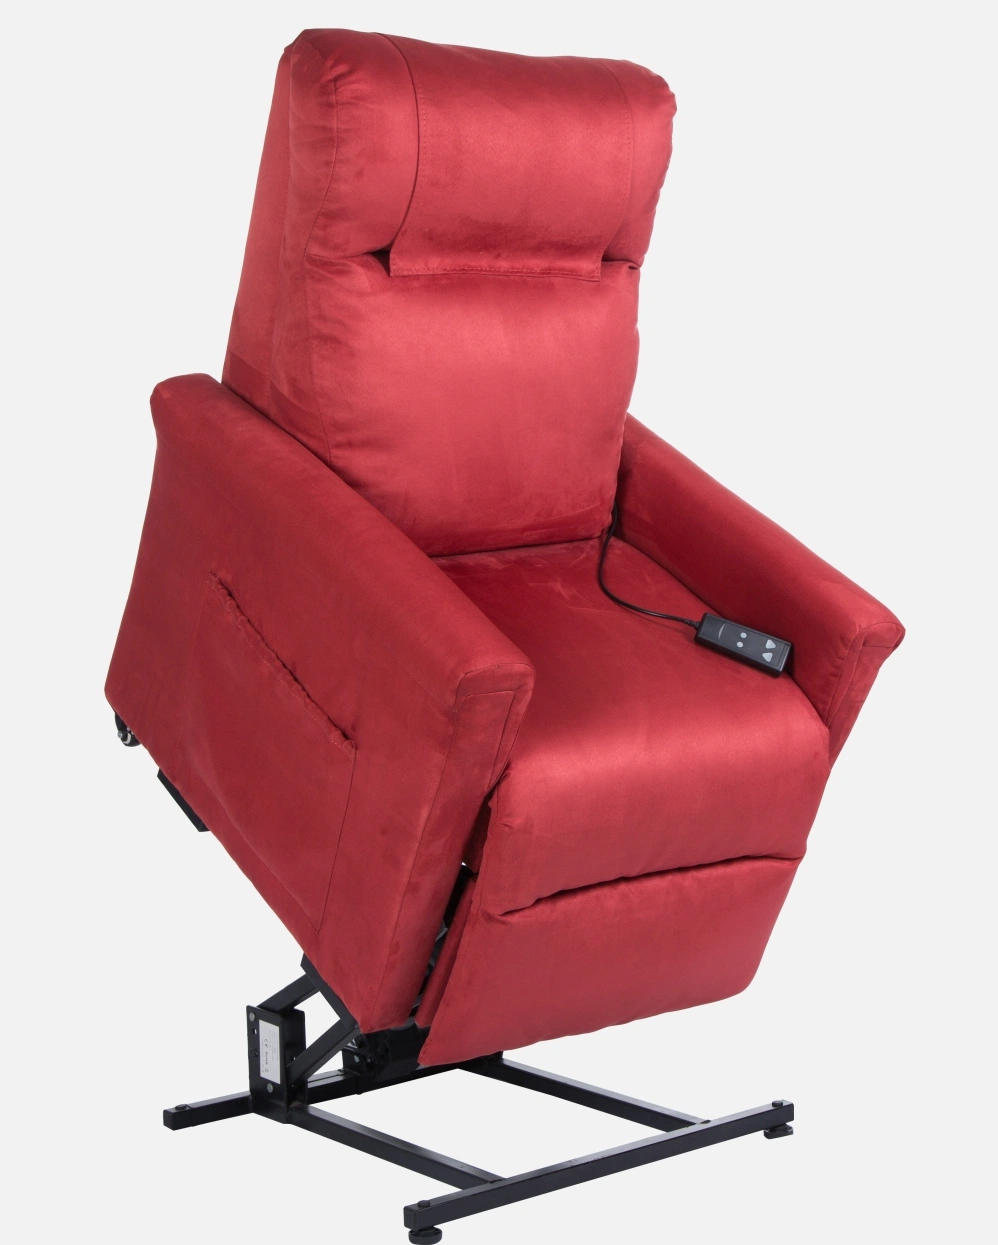 Fabricantes de Muebles de Cuidado de la Salud Sofá ajustable Maxicomforter Power Lift sillón reclinable Para ancianos con masaje